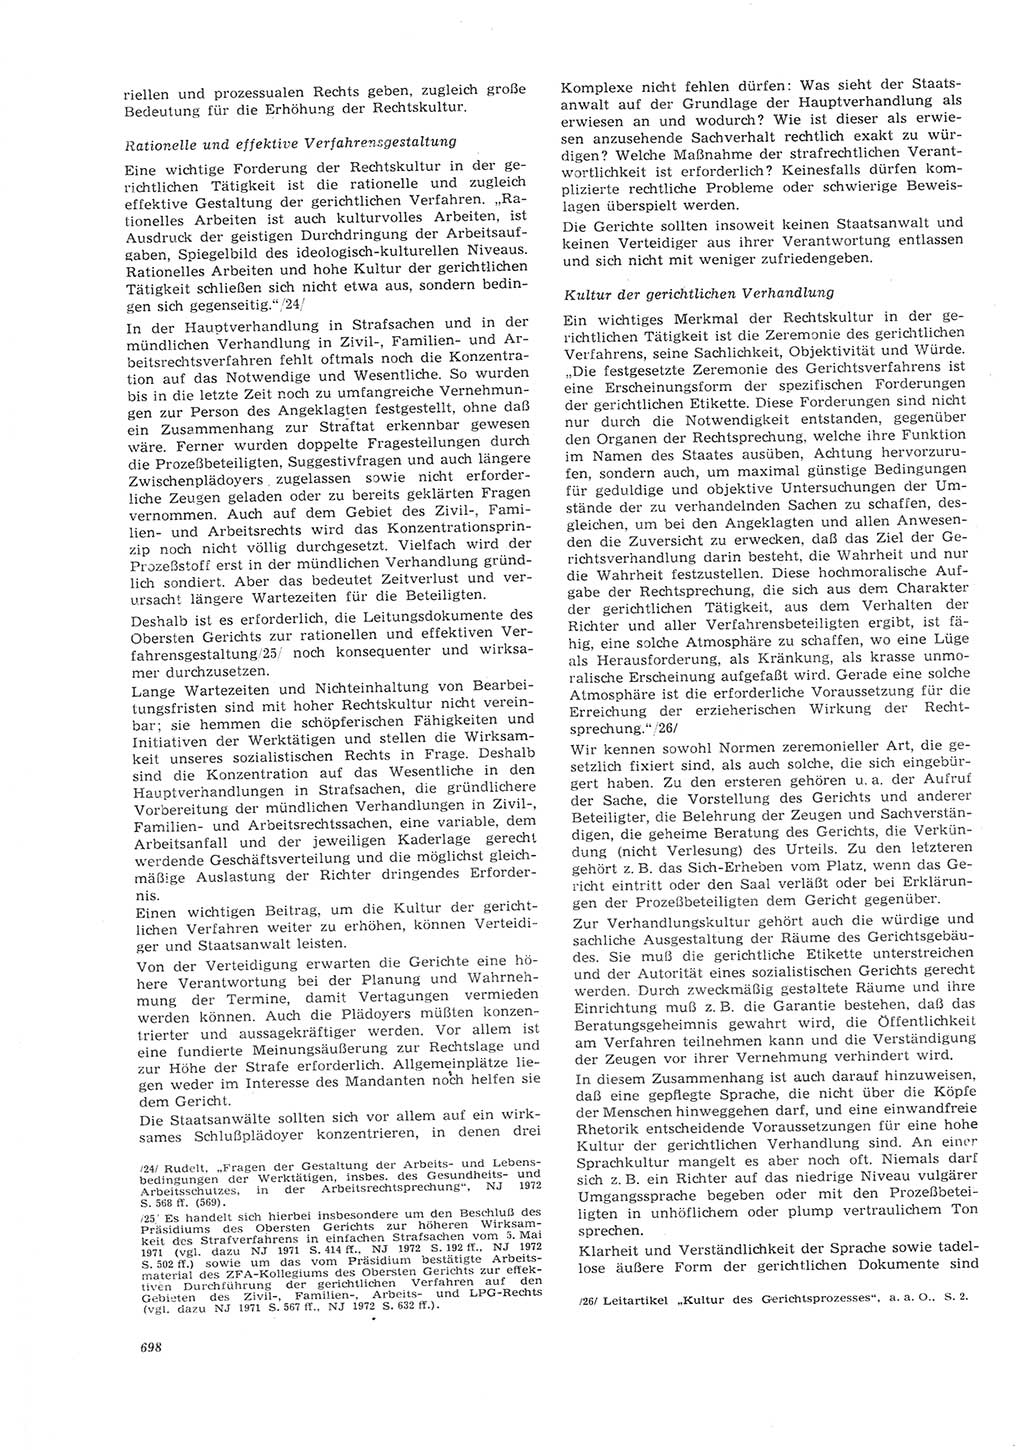 Neue Justiz (NJ), Zeitschrift für Recht und Rechtswissenschaft [Deutsche Demokratische Republik (DDR)], 26. Jahrgang 1972, Seite 698 (NJ DDR 1972, S. 698)